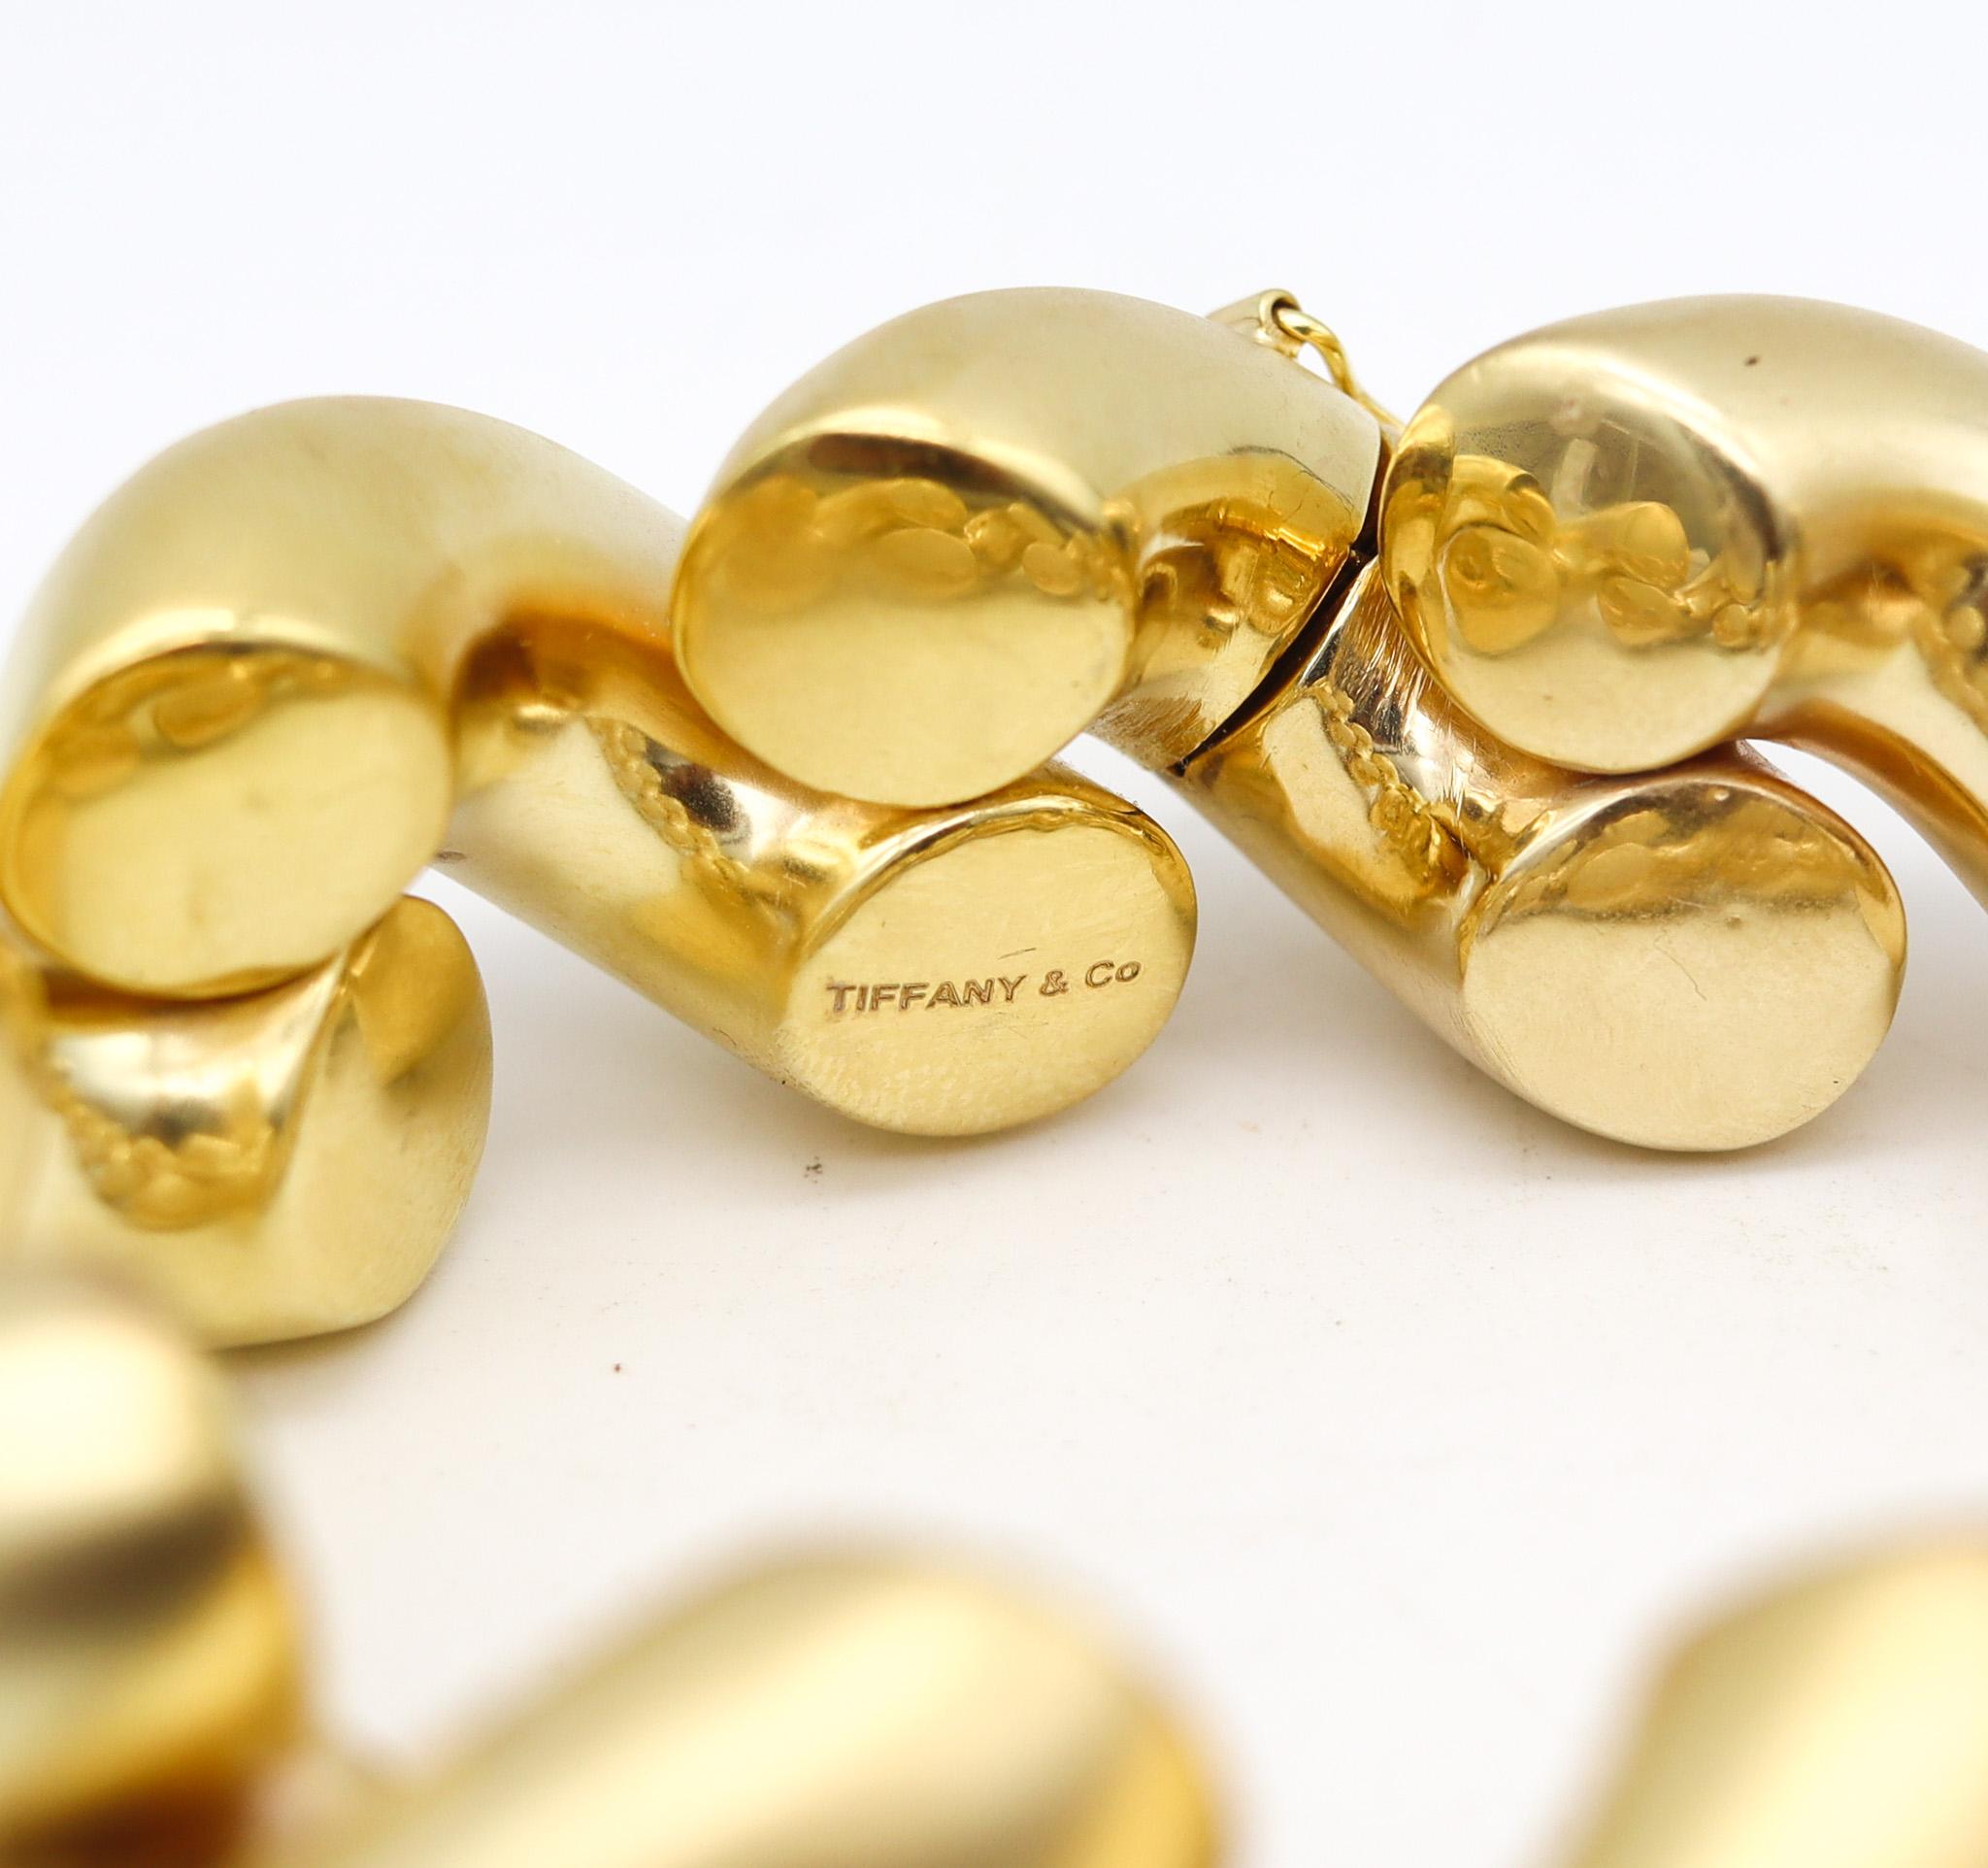 Bracelet à maillons de MarCo conçu par Tiffany & Co.

Fabuleux bracelet, créé aux Studios Tiffany en or jaune de 14 carats avec brossage.  finition. Le design est très audacieux, composé de 11 maillons surdimensionnés de type MarCo et est équipé